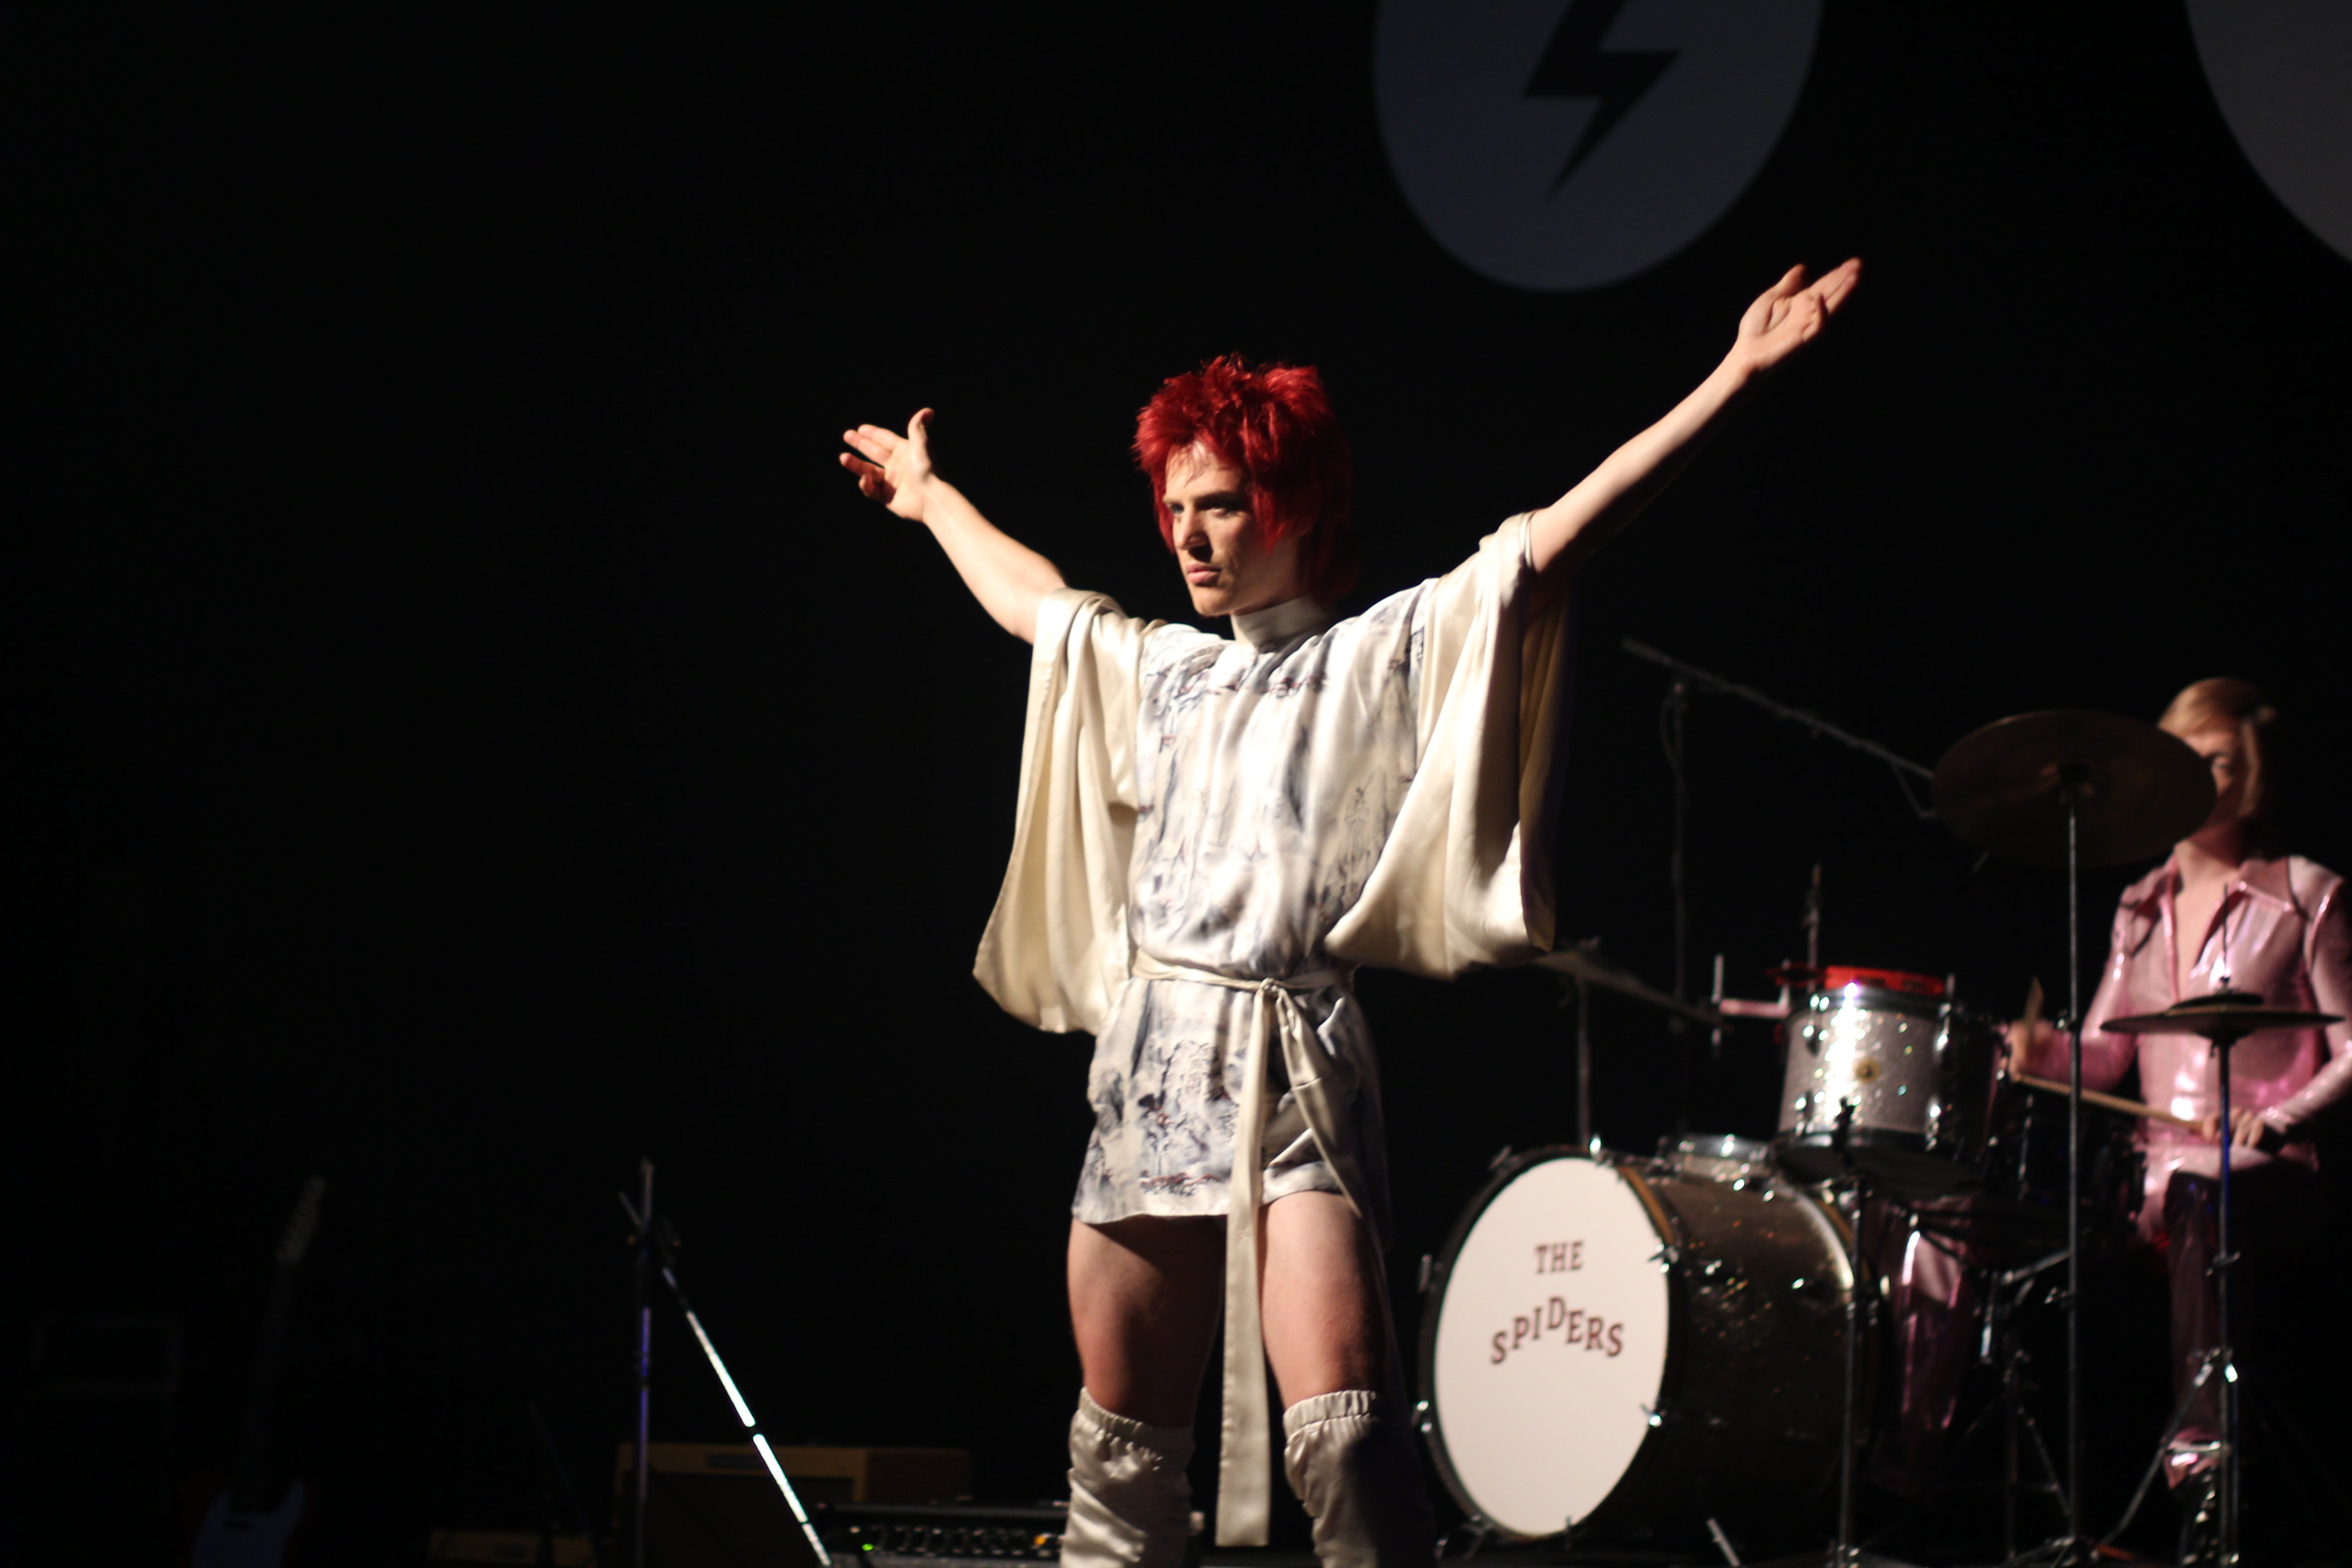 Kansai Yamamoto on Dressing David Bowie as Ziggy Stardust